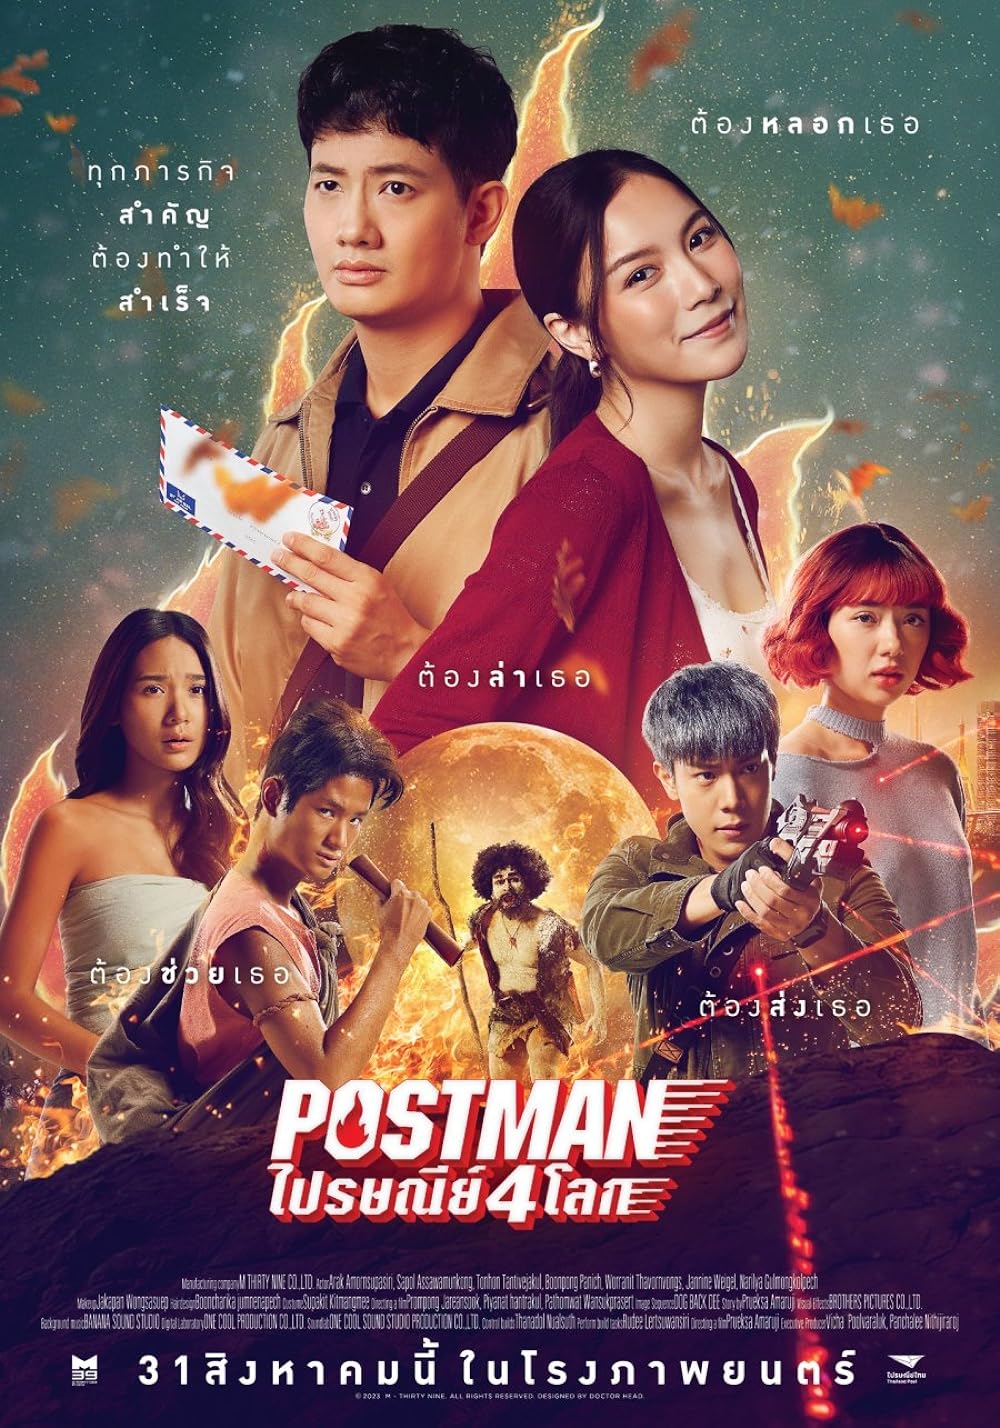 ดูหนังออนไลน์ฟรี ดูหนังออนไลน์ใหม่ Postman 2023 ไปรษณีย์ 4 โลก movie678